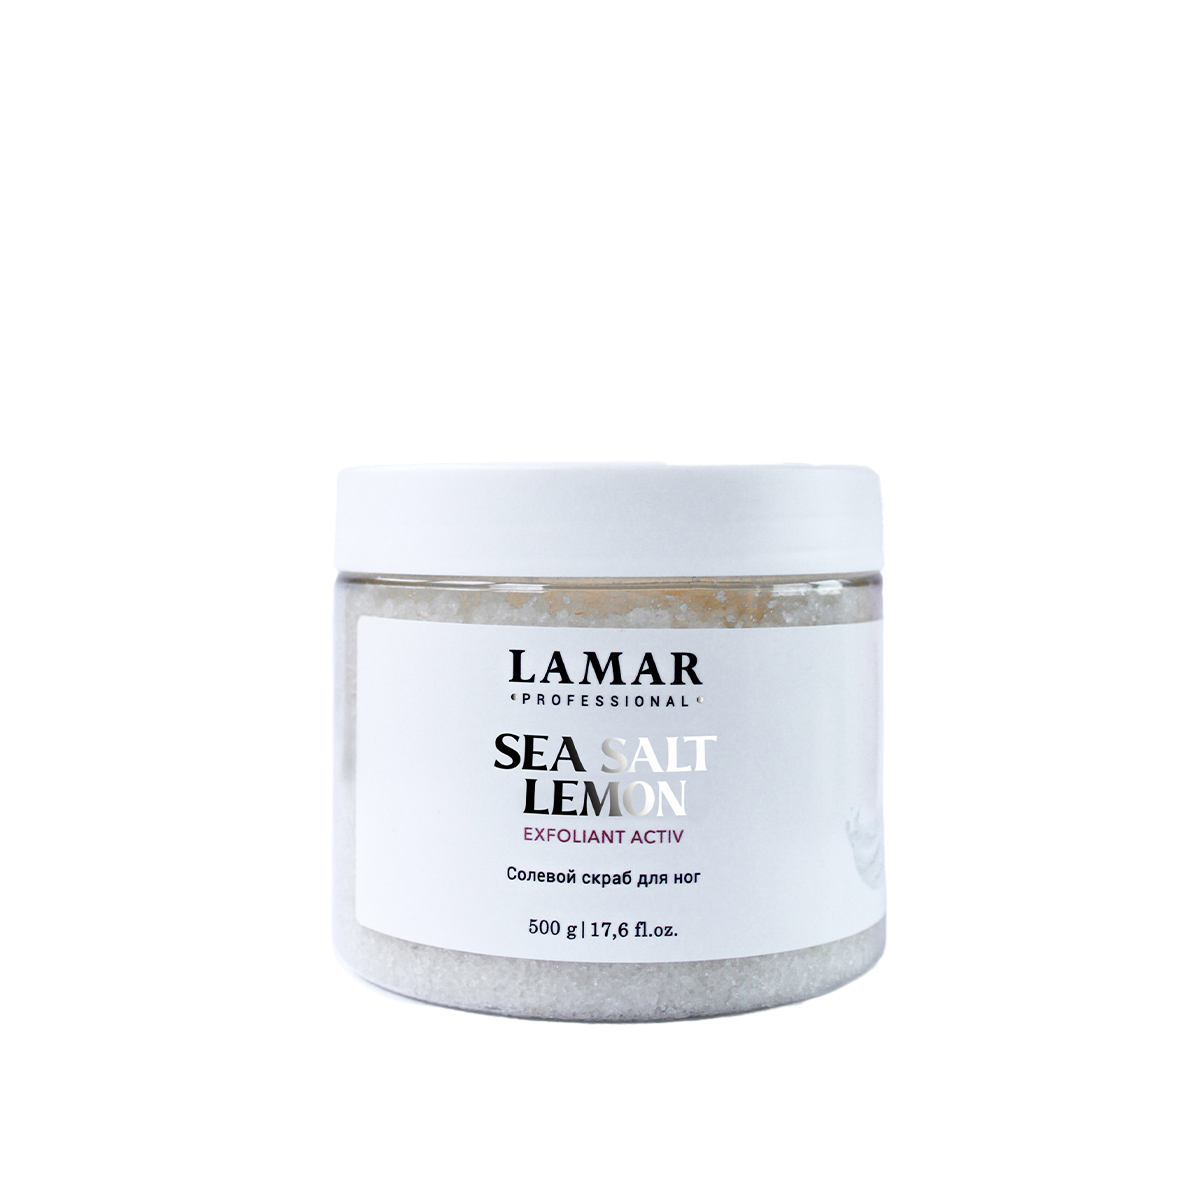 Скраб для ног Lamar Professional Sea salt lemon солевой 500 г